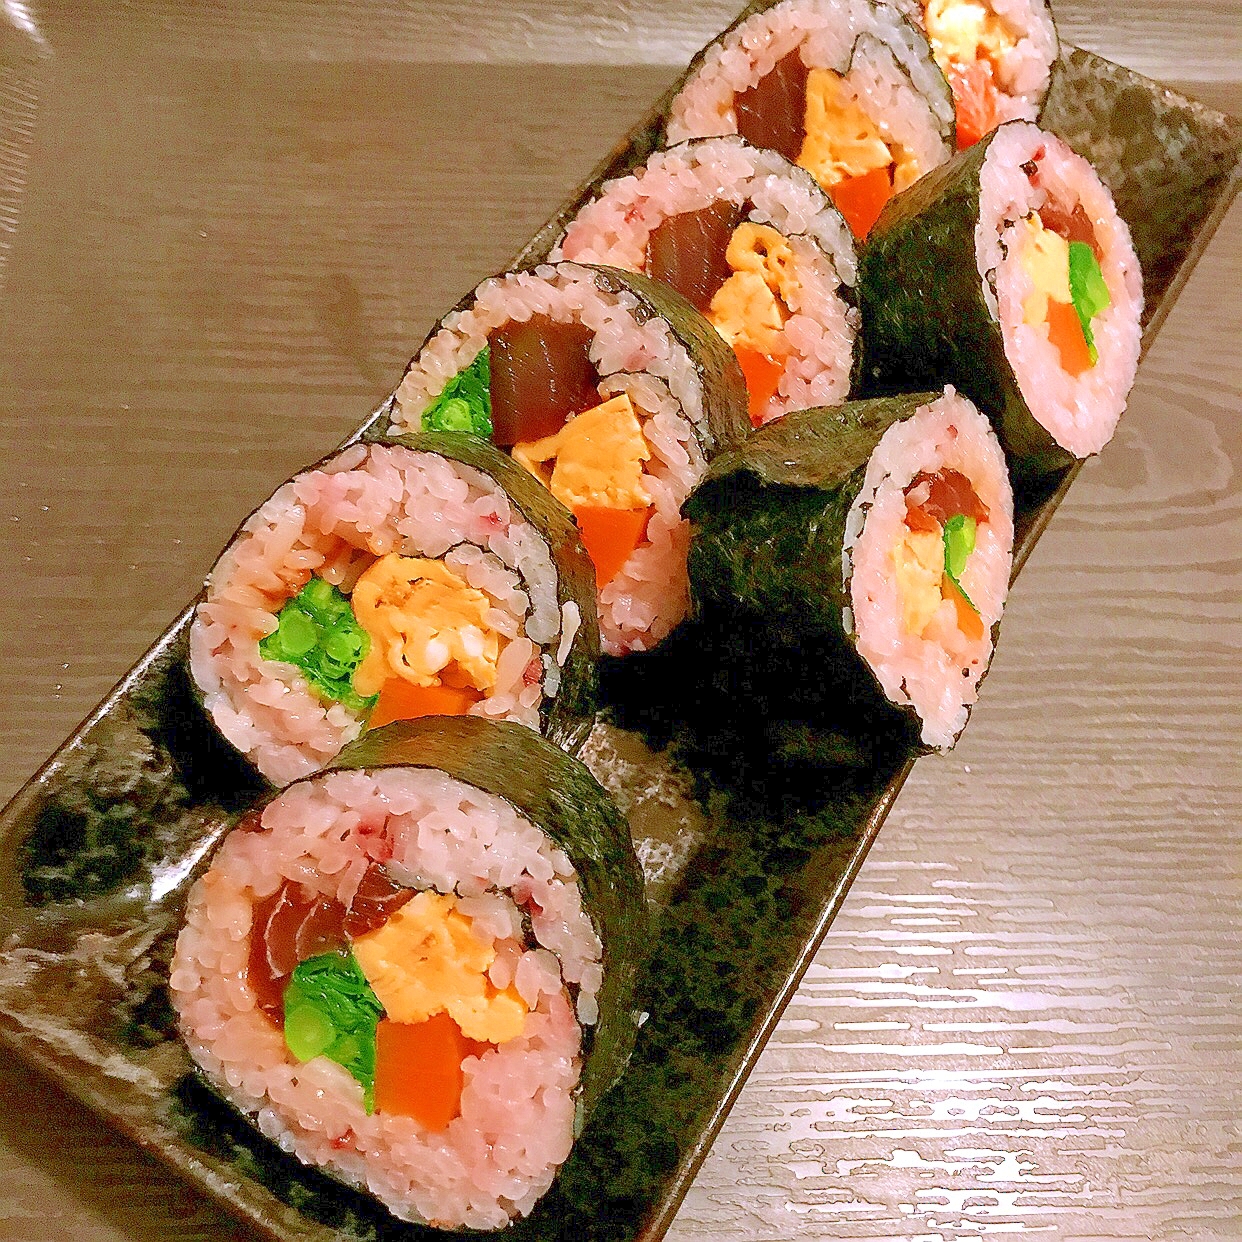 マグロの漬けと菜の花のボリューム巻き寿司